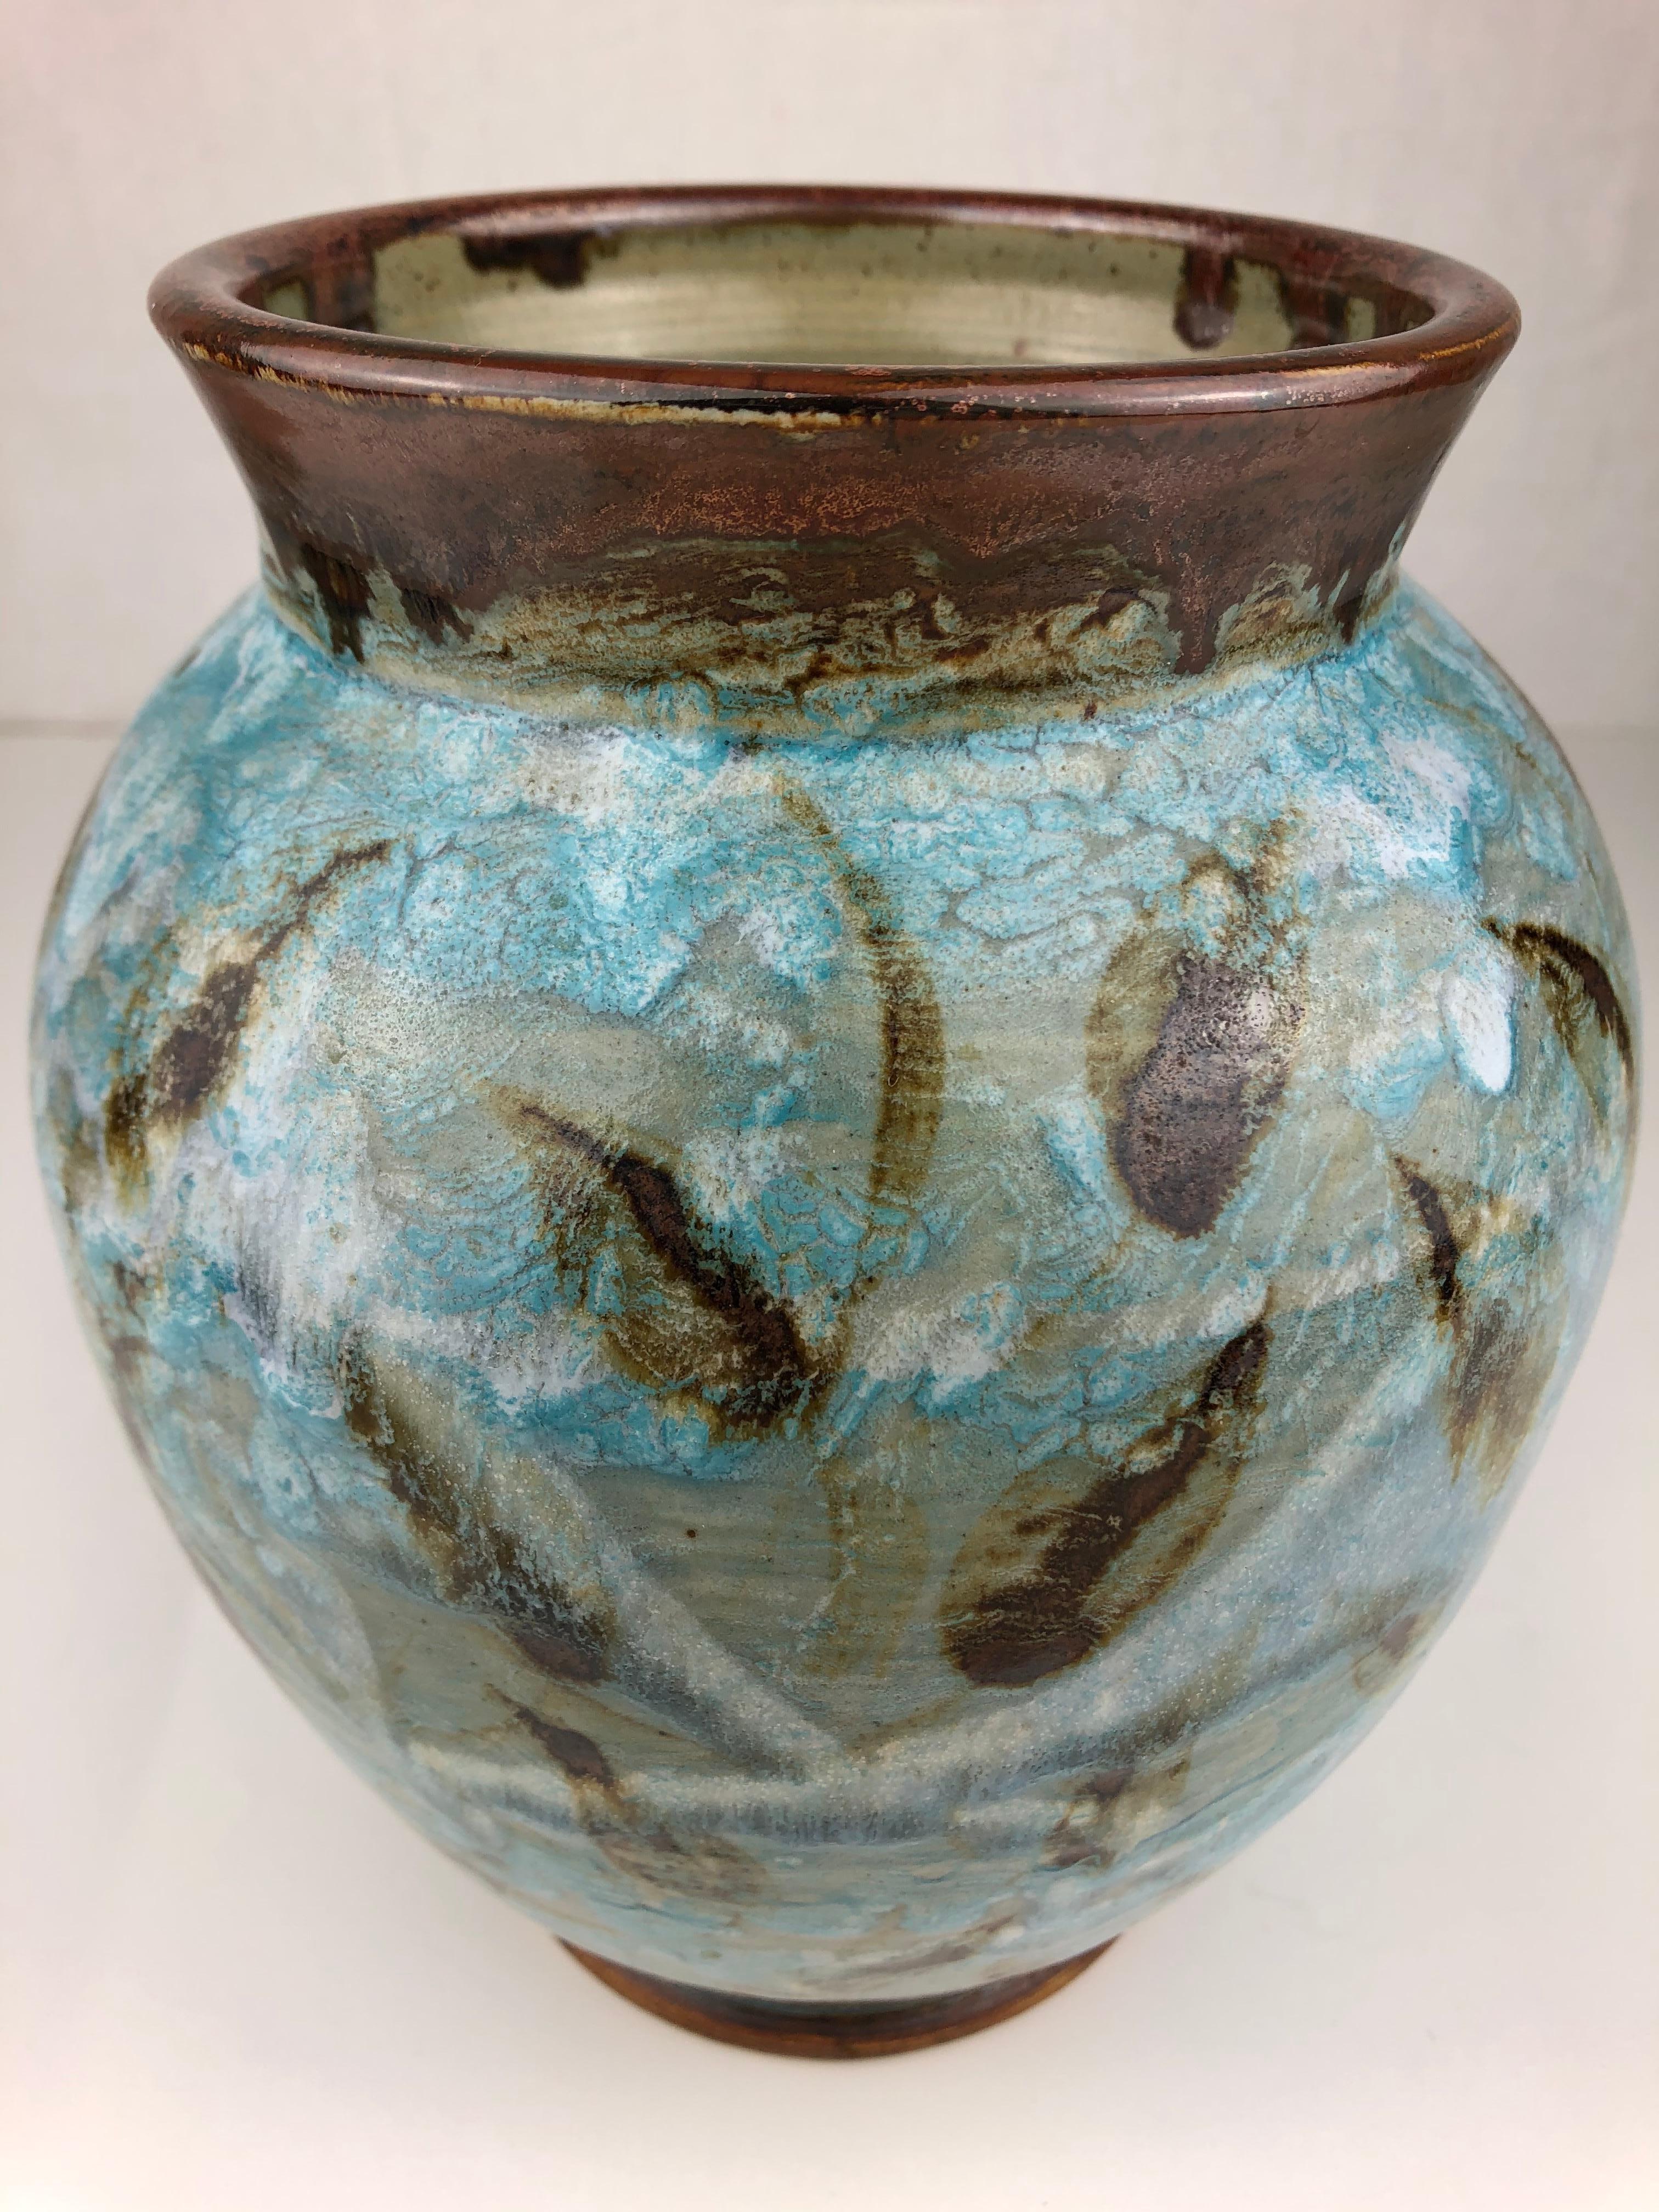 Diese schillernde glasierte Keramikvase wurde um 1980-1990 von Gerard Rappa in Frankreich handgefertigt. Die Mischung der Farben ist wirklich schön und die Wasserpflanzen tragen zum Charme bei.  

Er kann jedes Regal, jeden Tisch, jede Anrichte oder